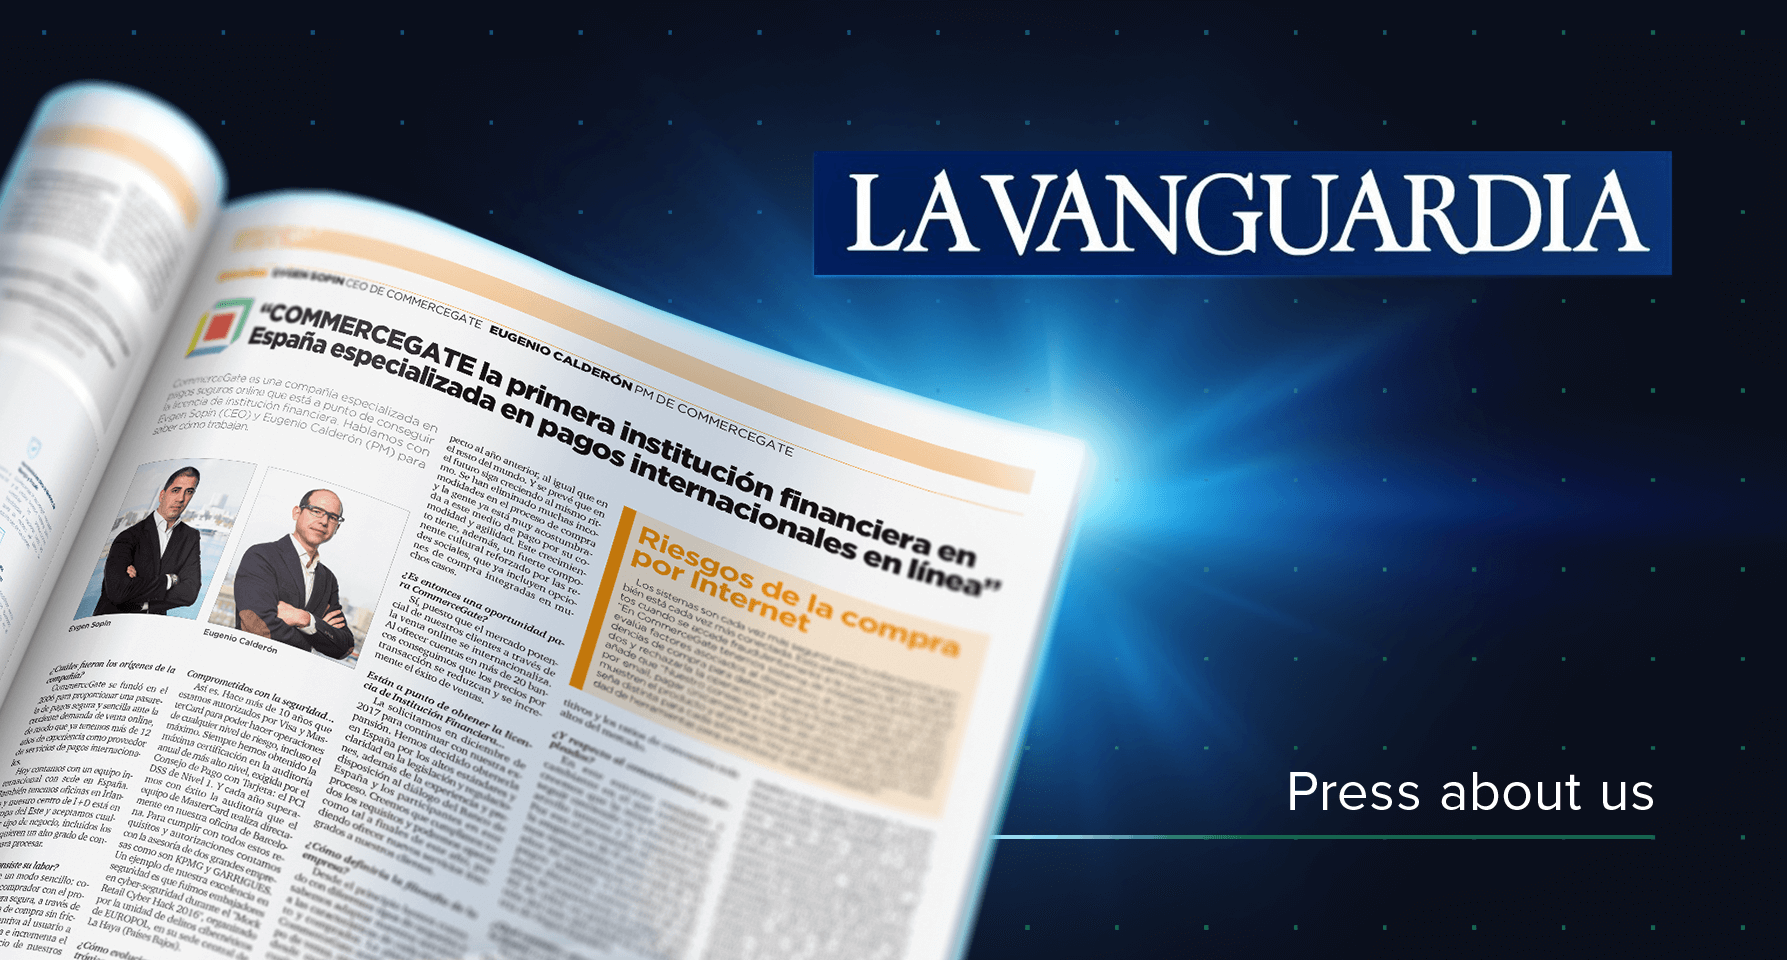 2018 Press about us La Vanguardia - CommerceGate.com